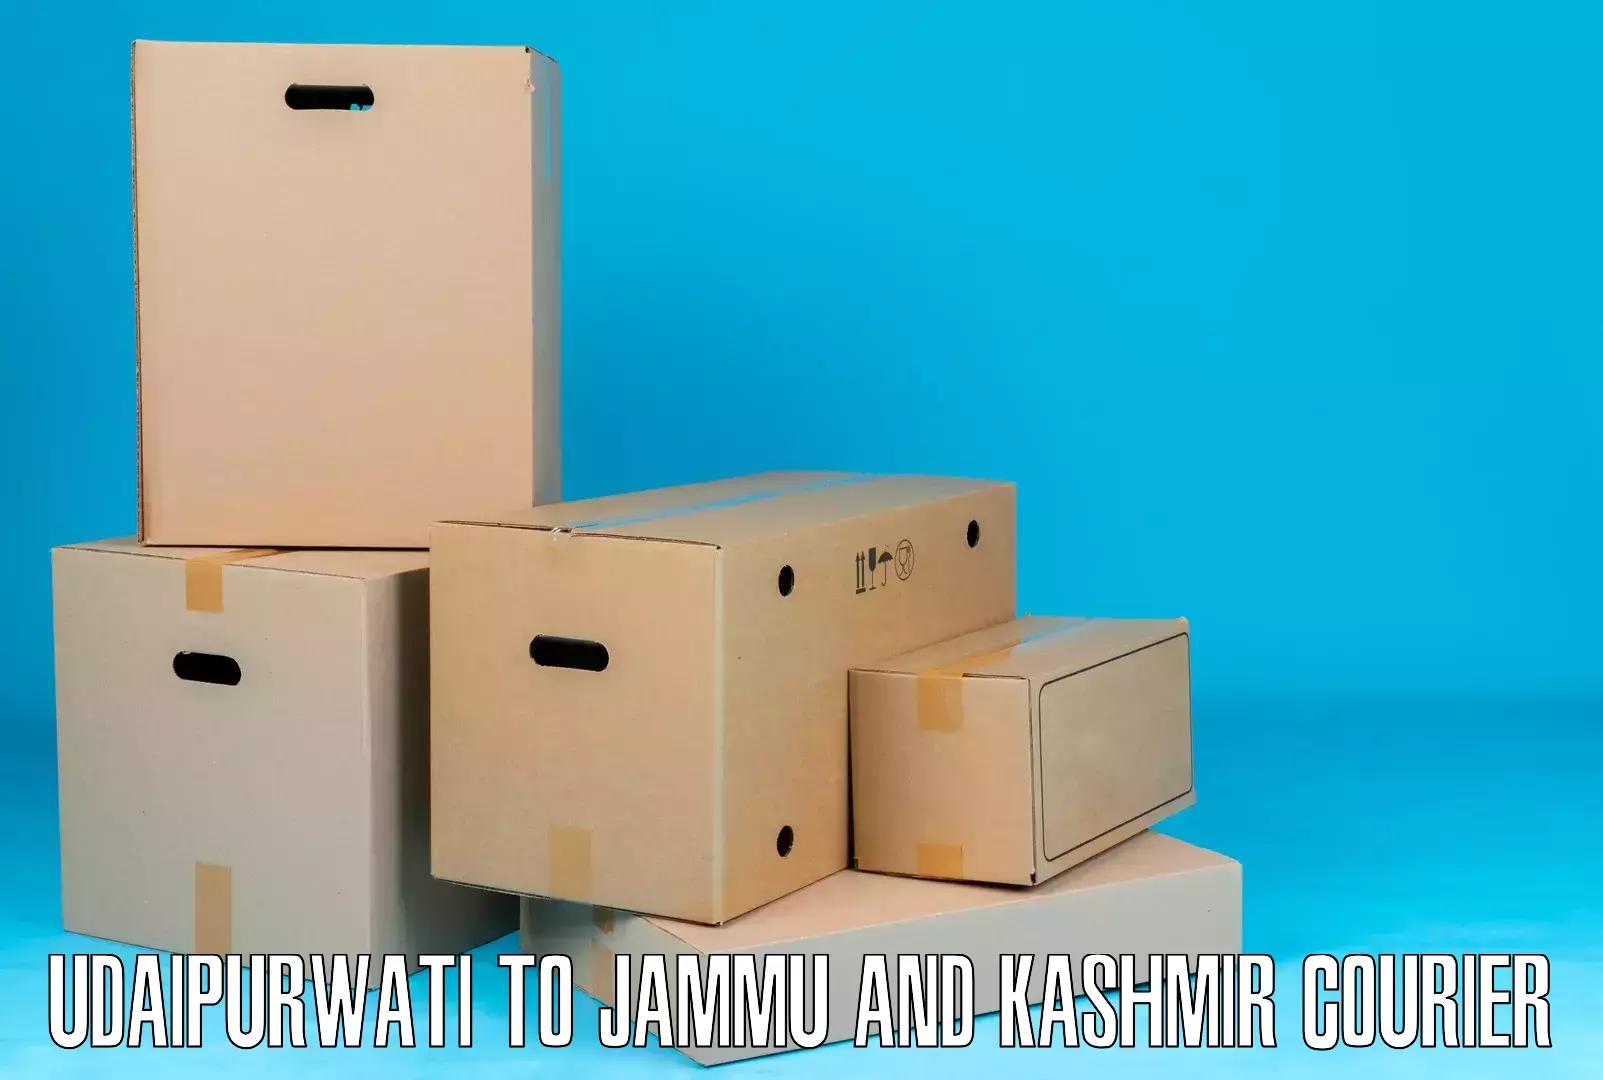 Cargo courier service Udaipurwati to Srinagar Kashmir